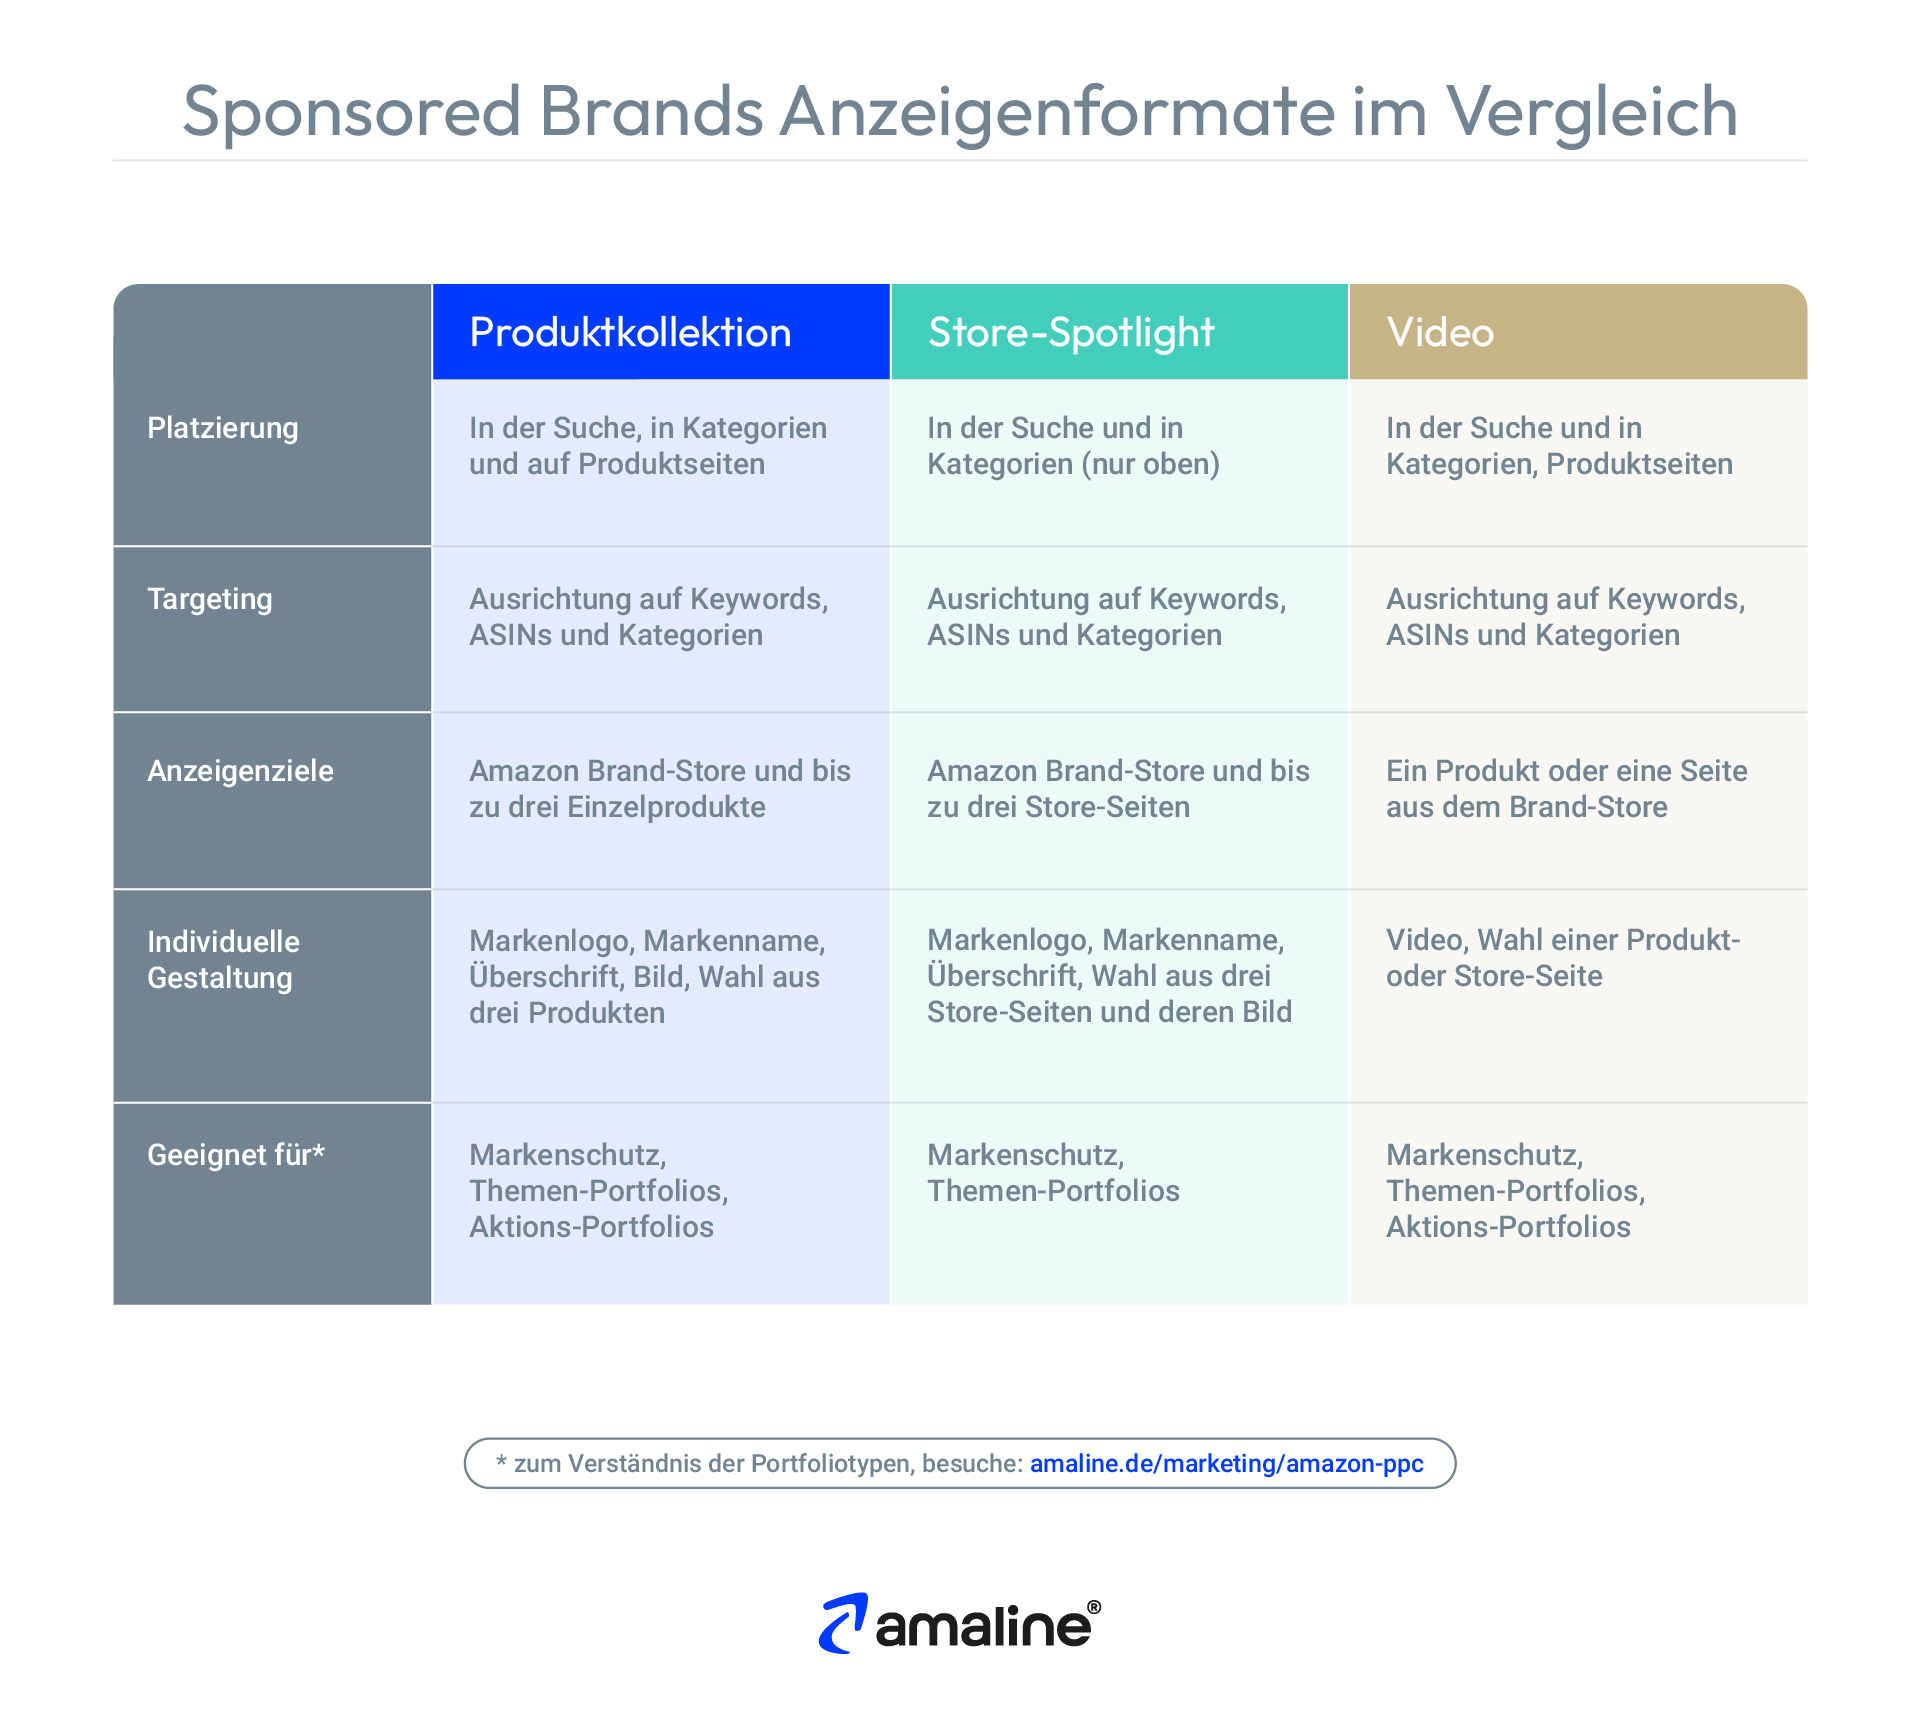 Die Tabelle vergleicht die drei Anzeigenformate Produktkollektion, Store-Spotlight und Video, die in Amazon Sponsored Brands Kampagnen zur Verfügung stehen.